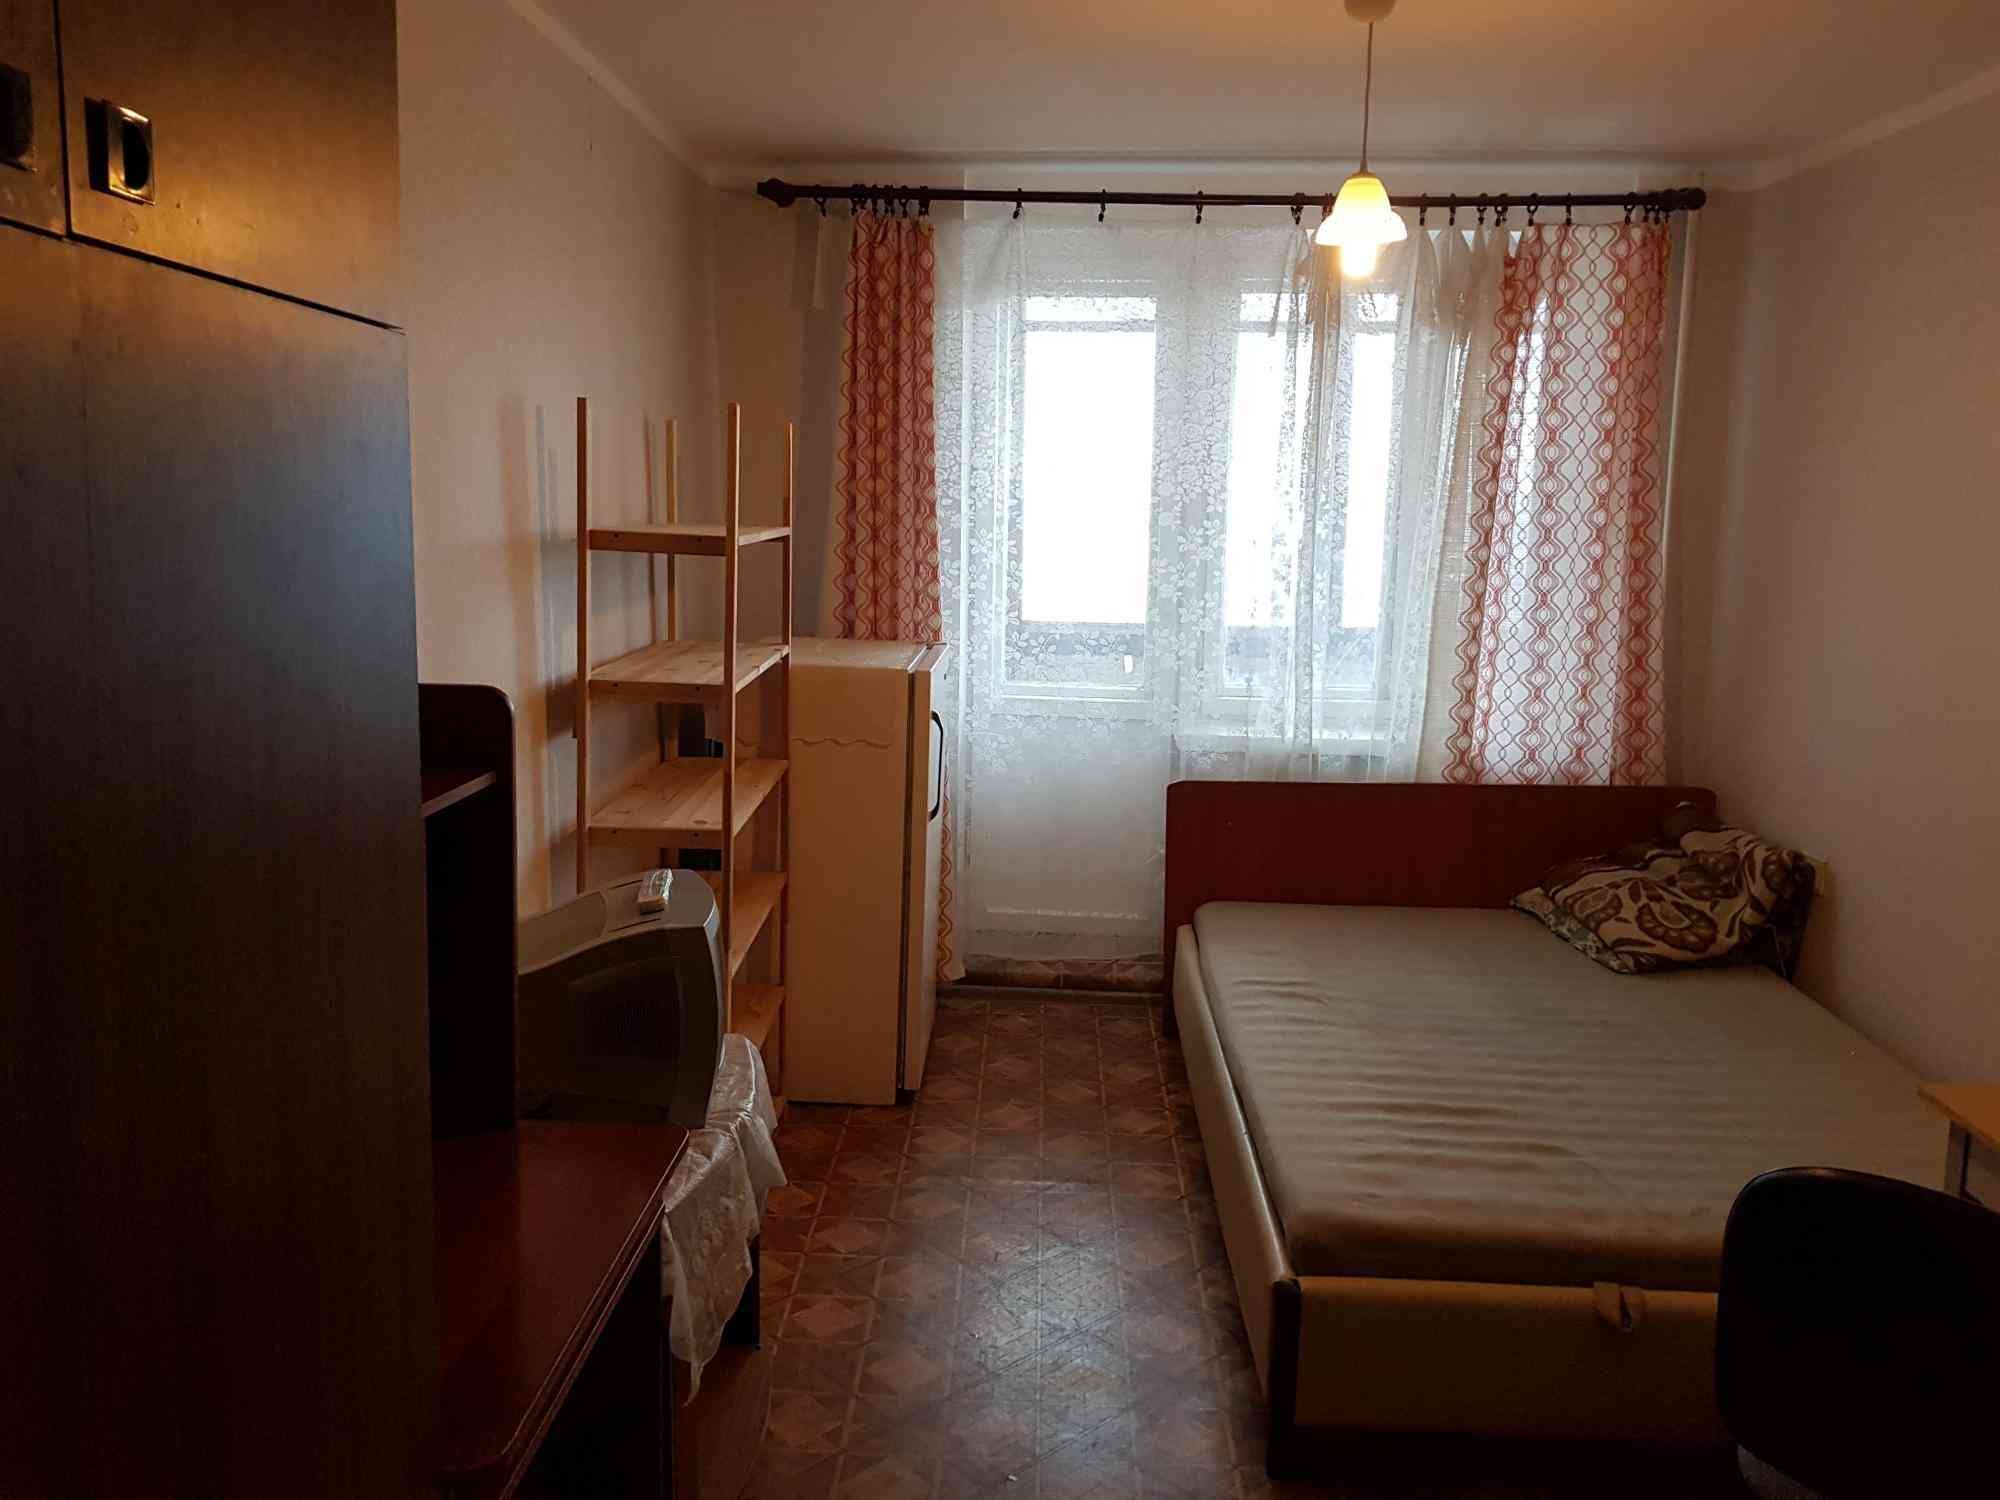 Купить дешевую комнату в общежитии. Комната в общежитии. Спальня в общежитии. Фотографии комнаты в общежитии. Благоустроенная комната в общежитии.